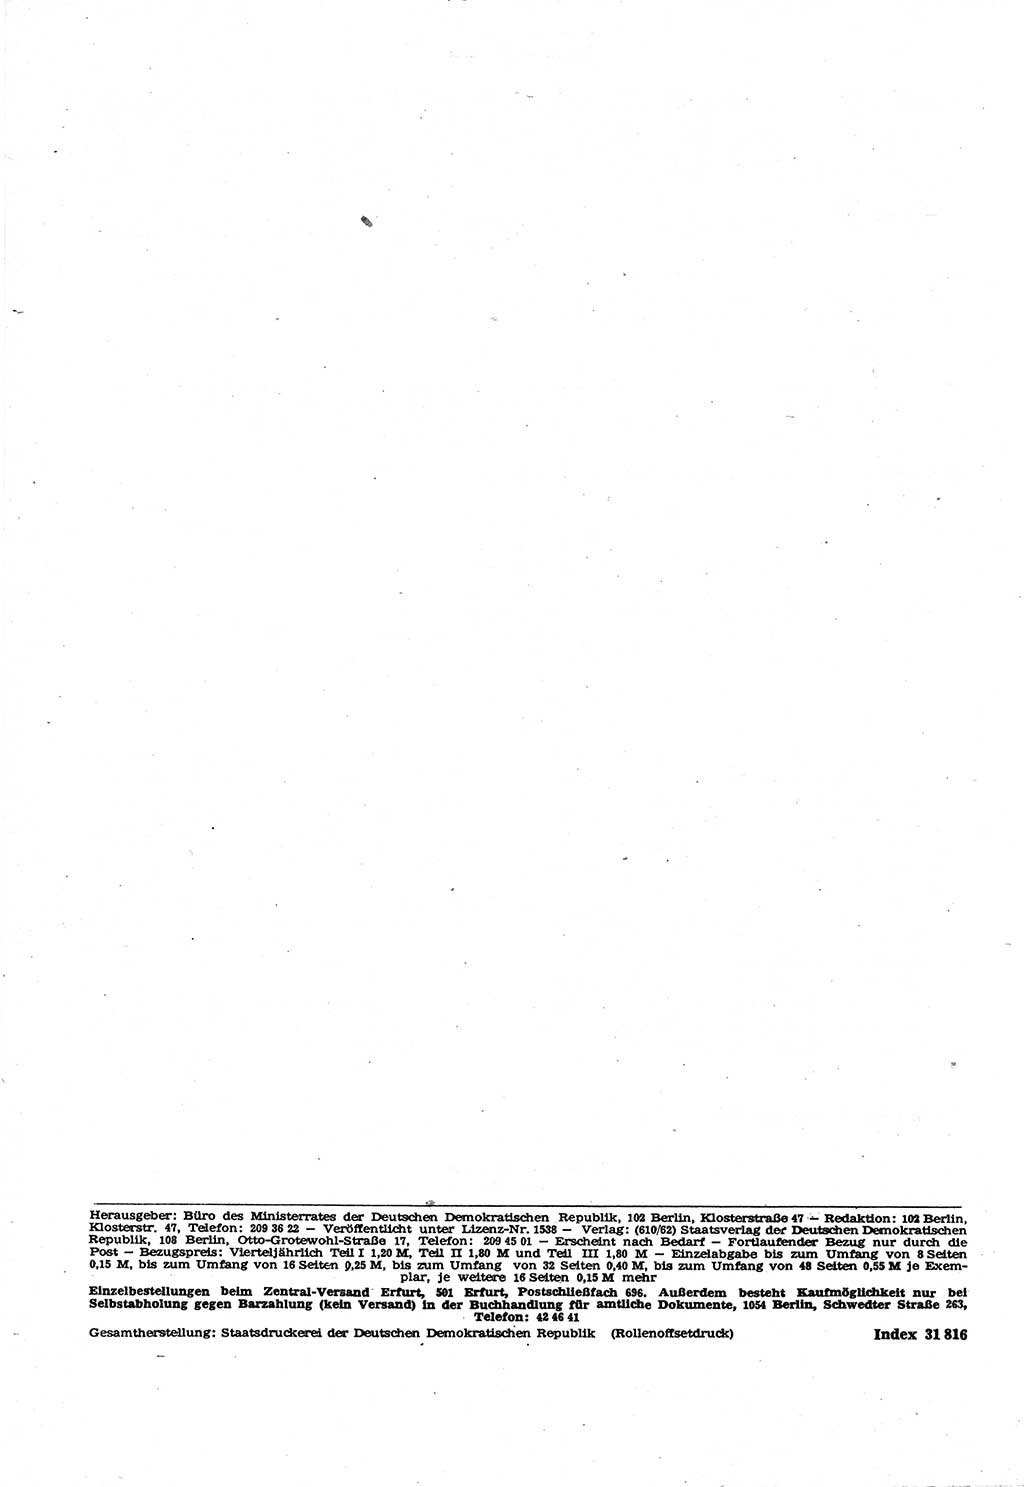 Gesetzblatt (GBl.) der Deutschen Demokratischen Republik (DDR) Teil Ⅰ 1969, Seite 248 (GBl. DDR Ⅰ 1969, S. 248)